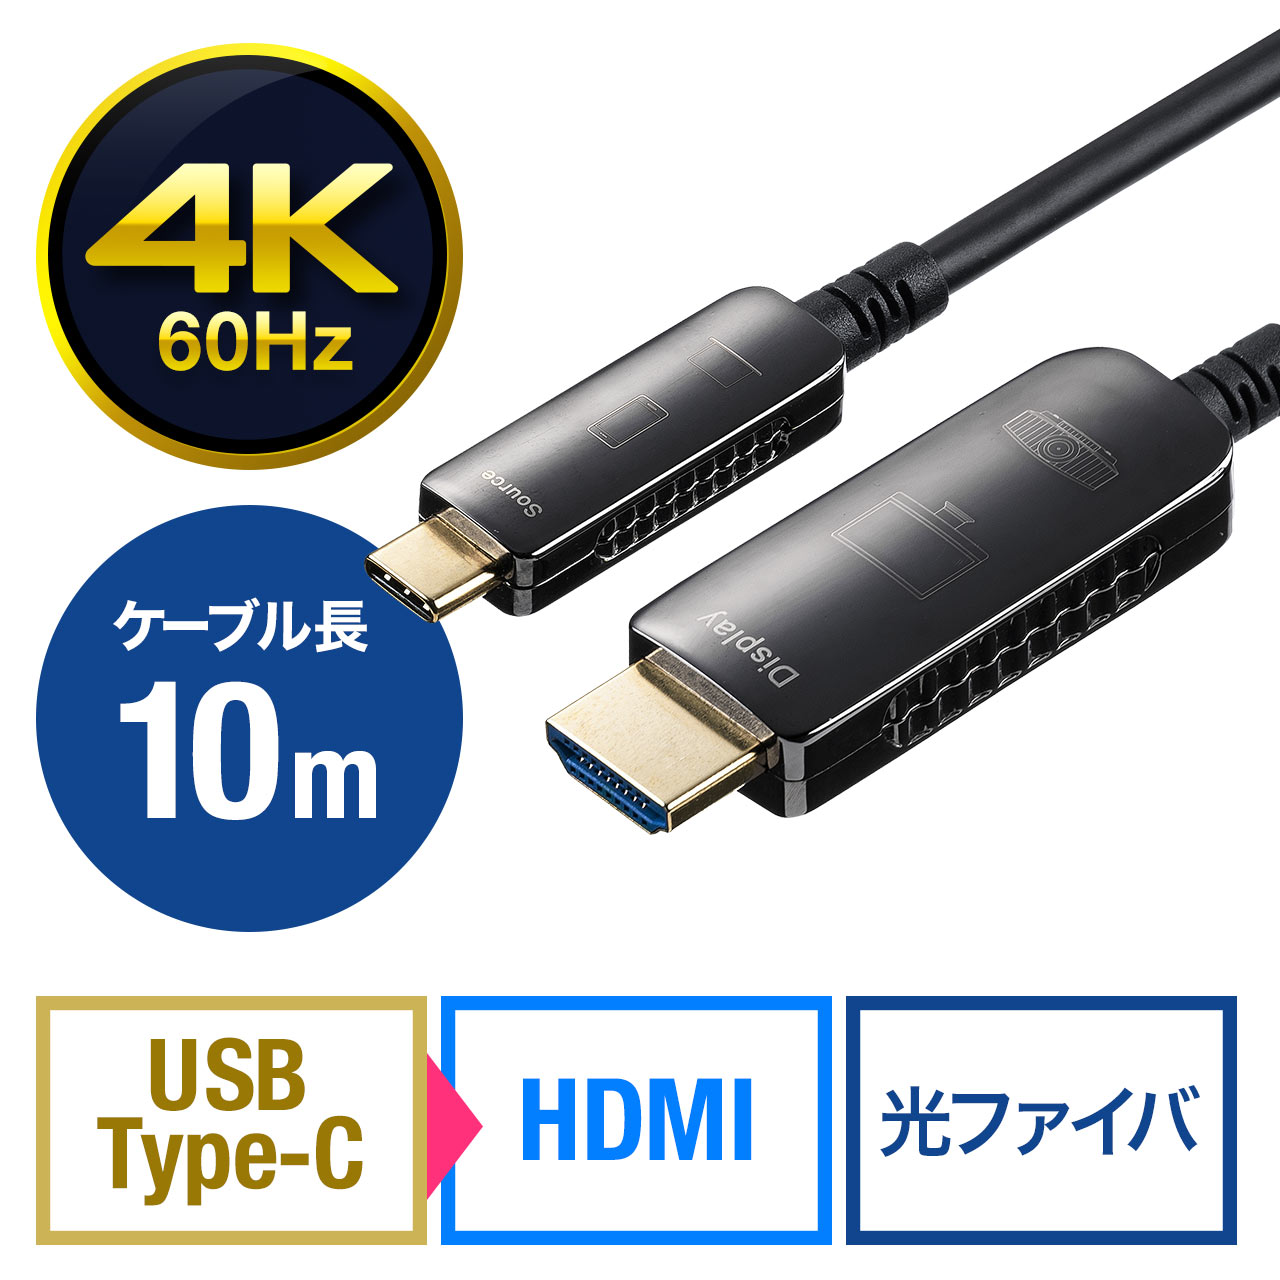 訳あり新品 USB Type C-HDMI変換アダプタ 4K 60Hz PD対応 AD-ALCPHDPD サンワサプライ 外装に傷・汚れあり